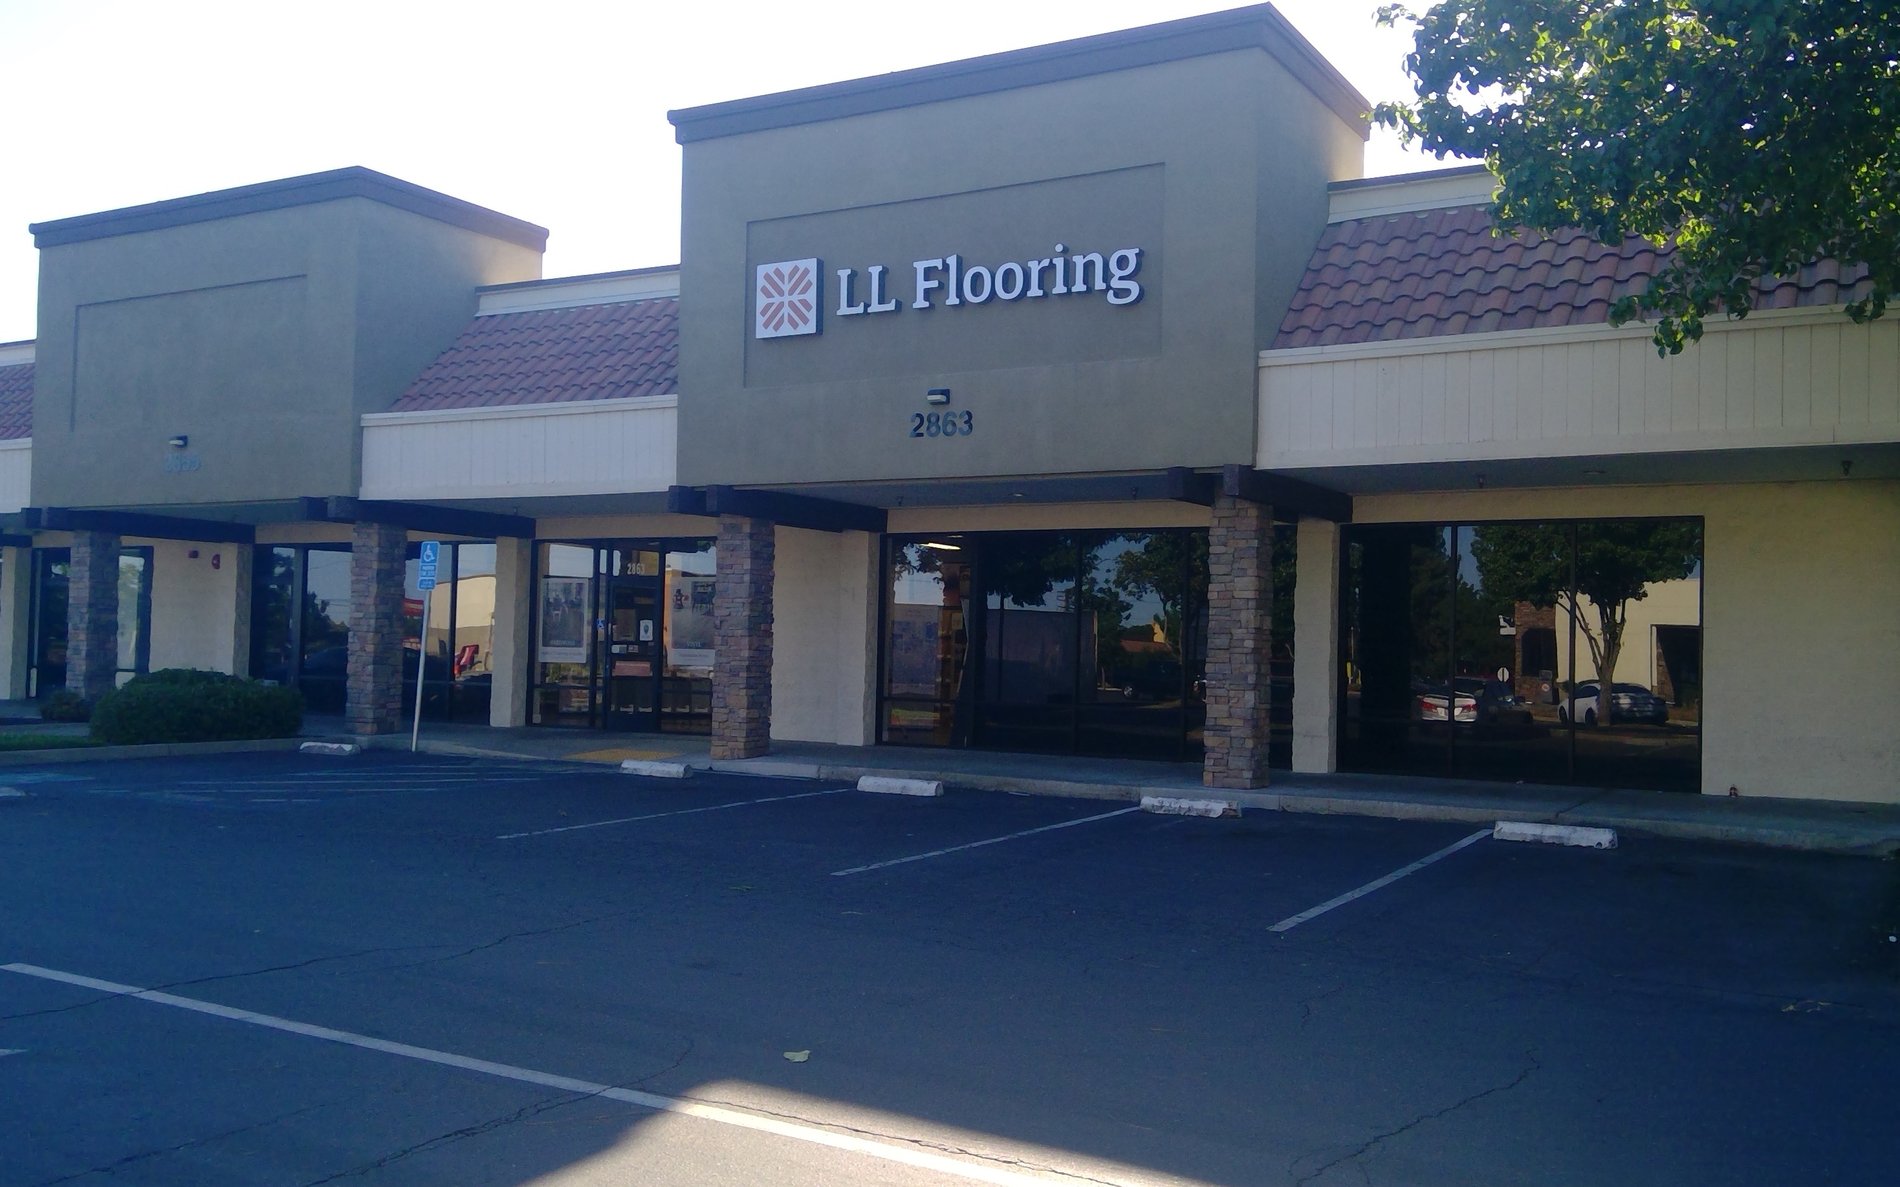 LL Flooring #1034 Rancho Cordova | 2863 Zinfandel Drive | Storefront